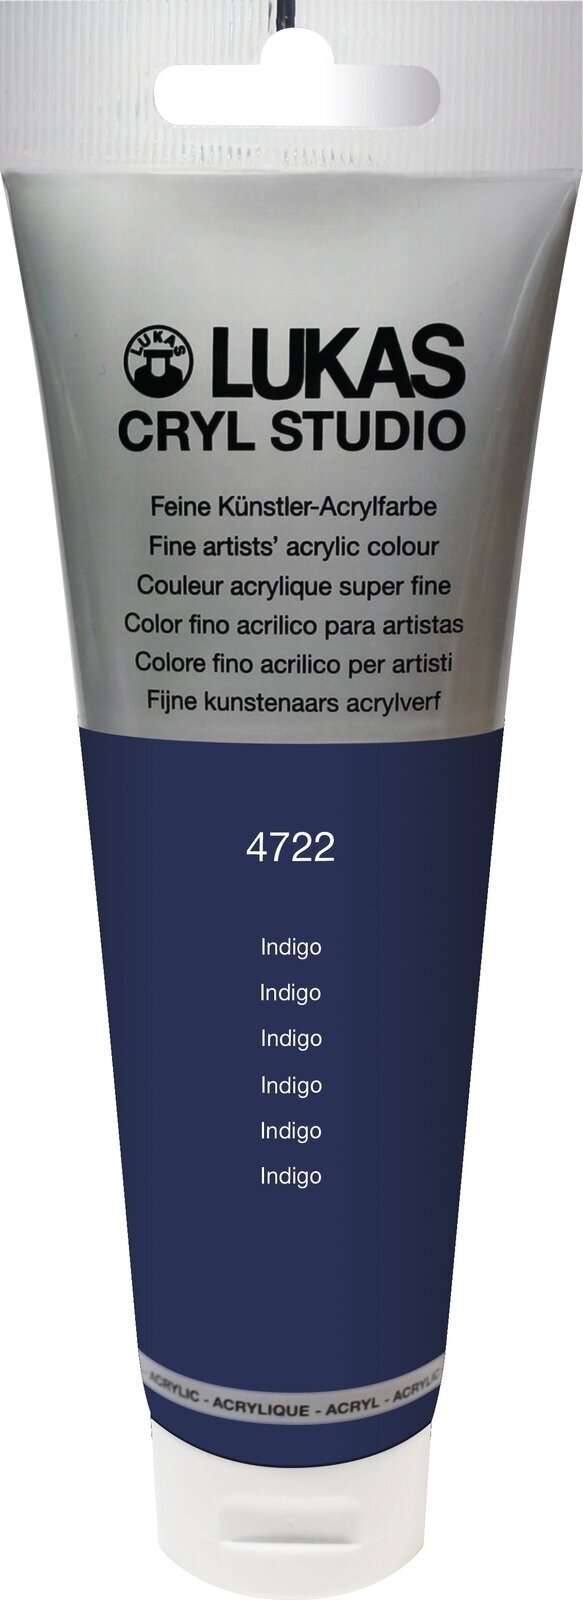 Akrylová farba Lukas Cryl Studio Acrylic Paint Plastic Tube Akrylová farba Indigo 125 ml 1 ks